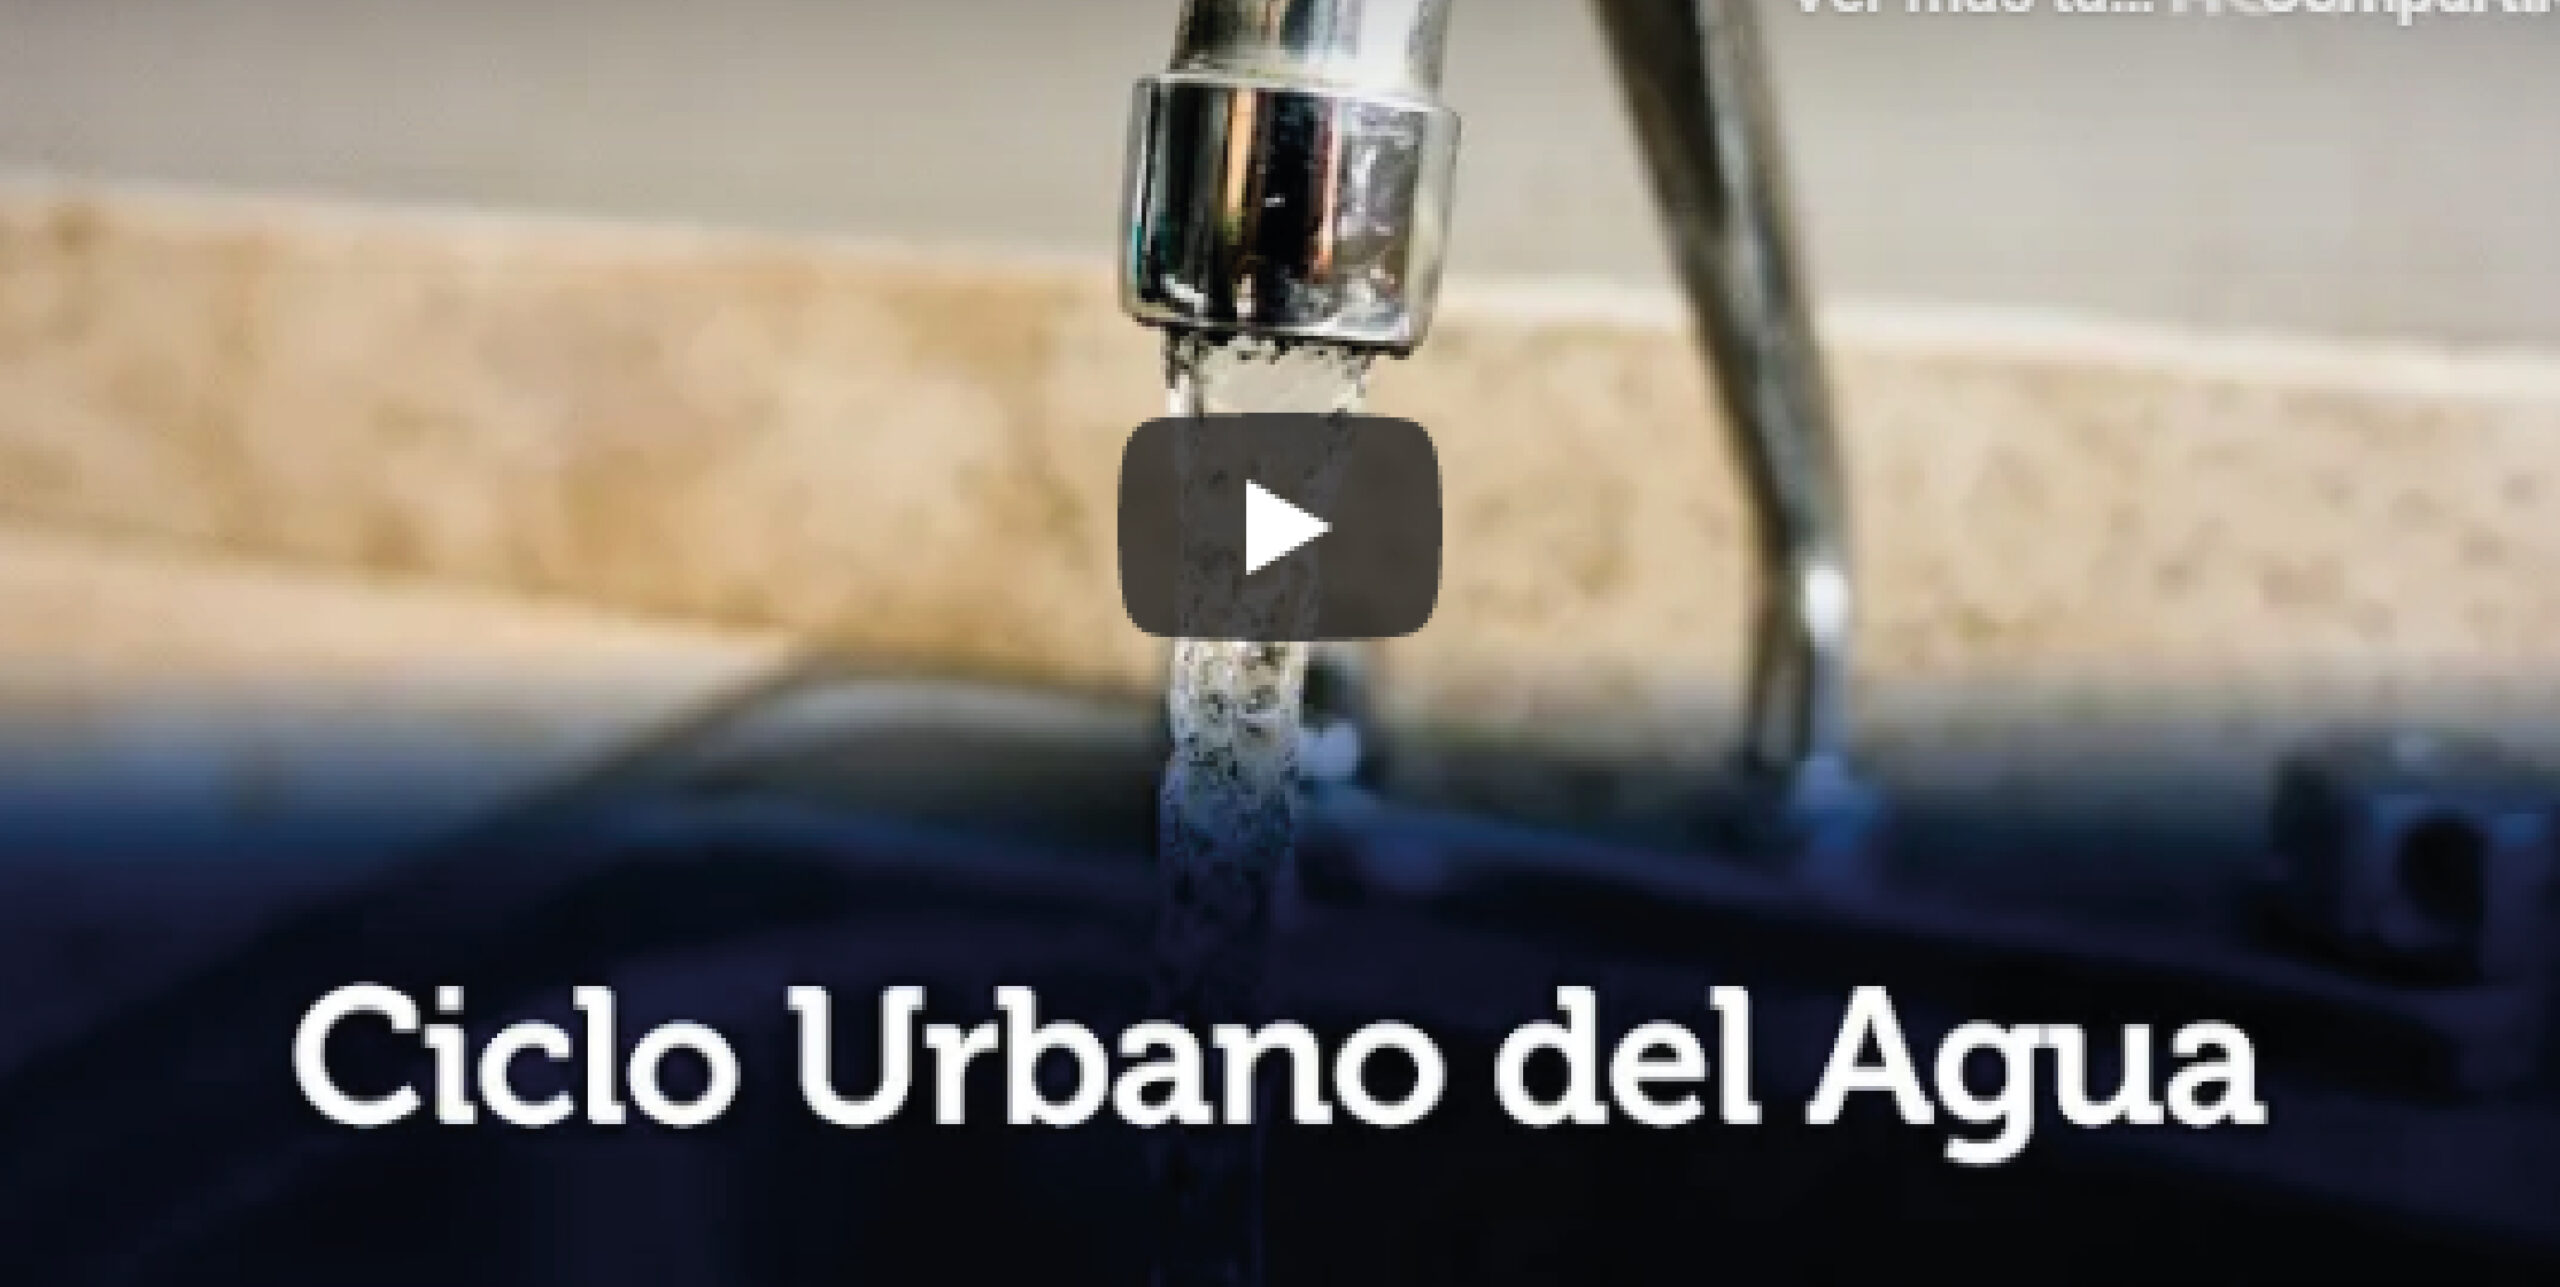 Conoce nuestro Ciclo Urbano del Agua?